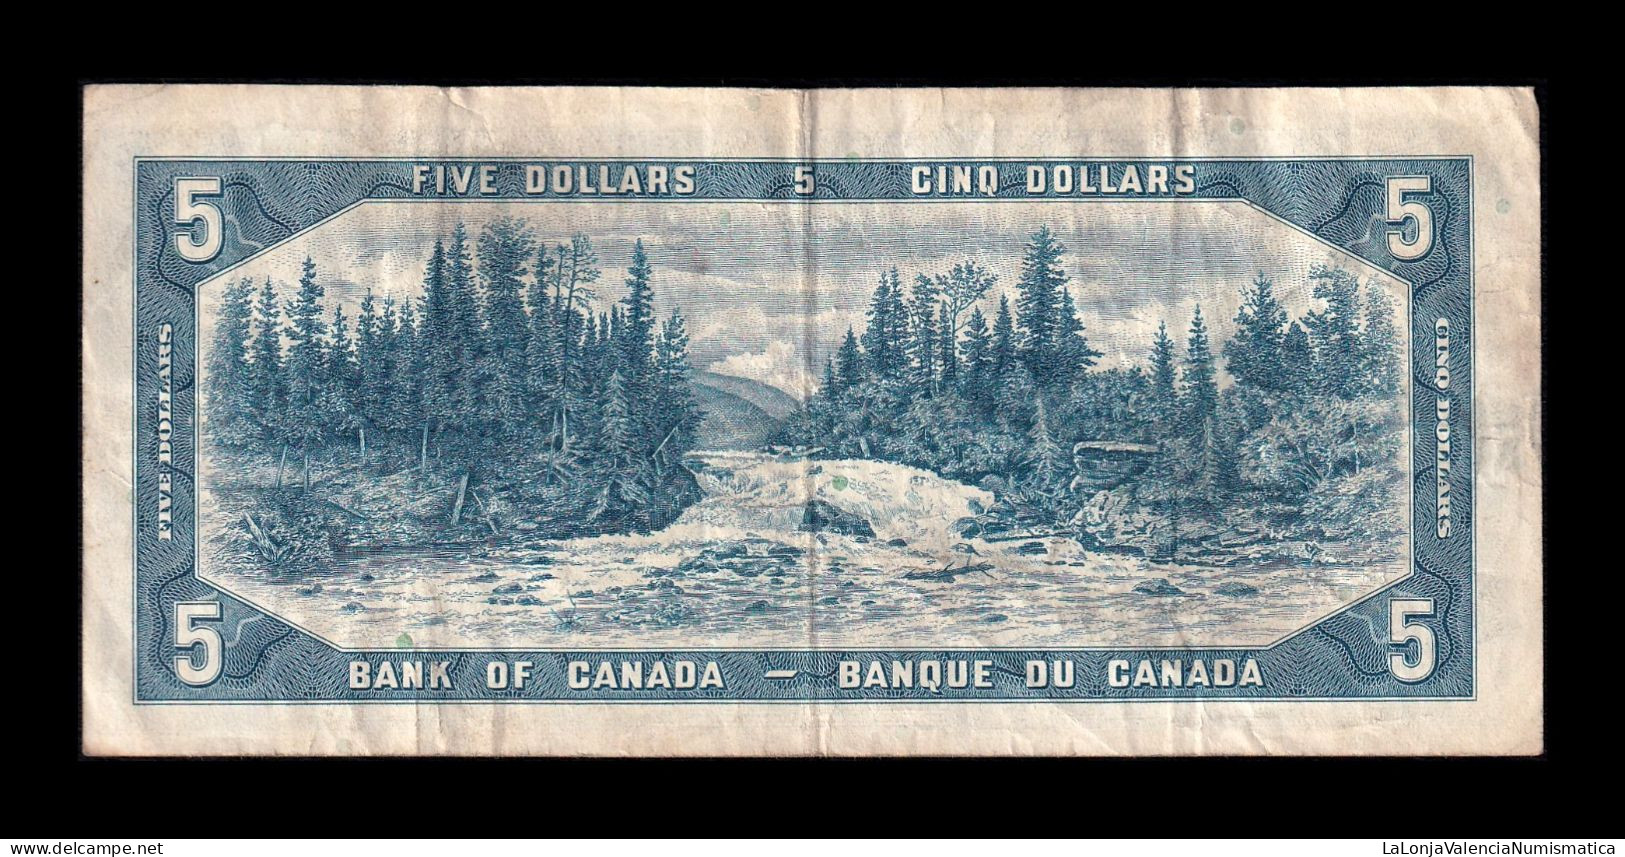 Canadá 5 Dollars Elizabeth II 1954 Pick 77b Mbc Vf - Canada